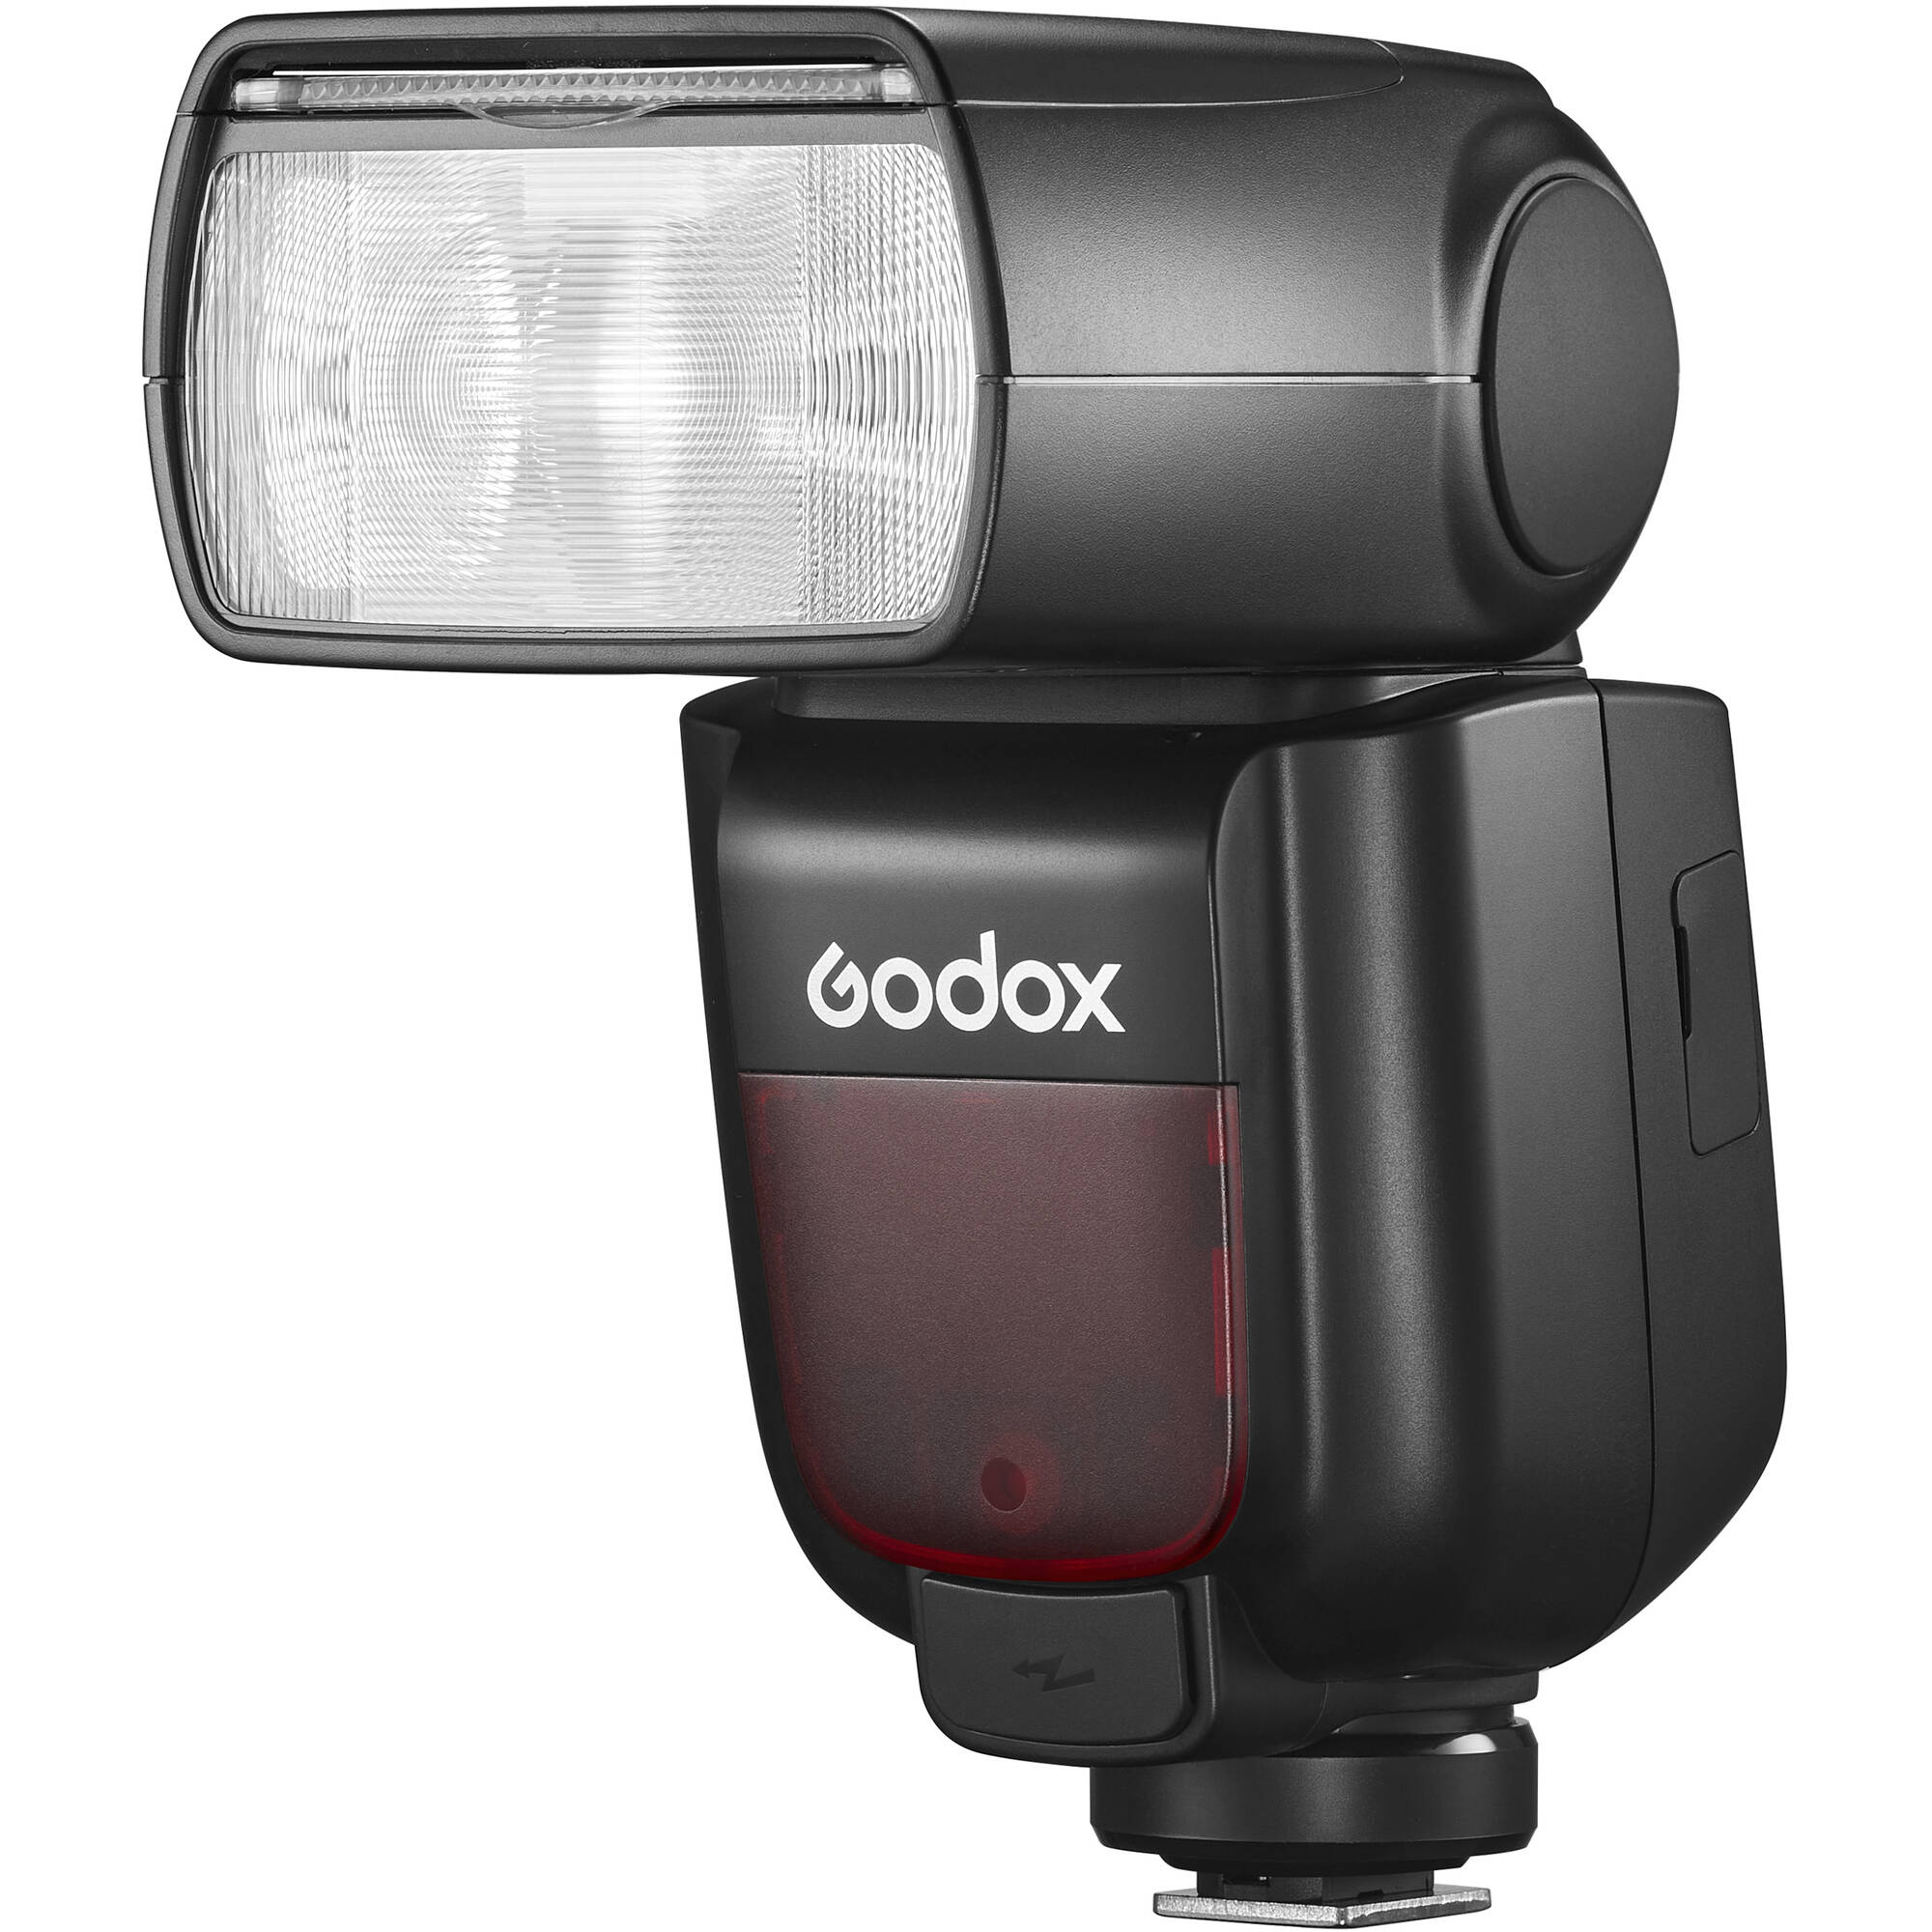 Godox TT685ii F TTL Wireless Speedlite - Fujifilm